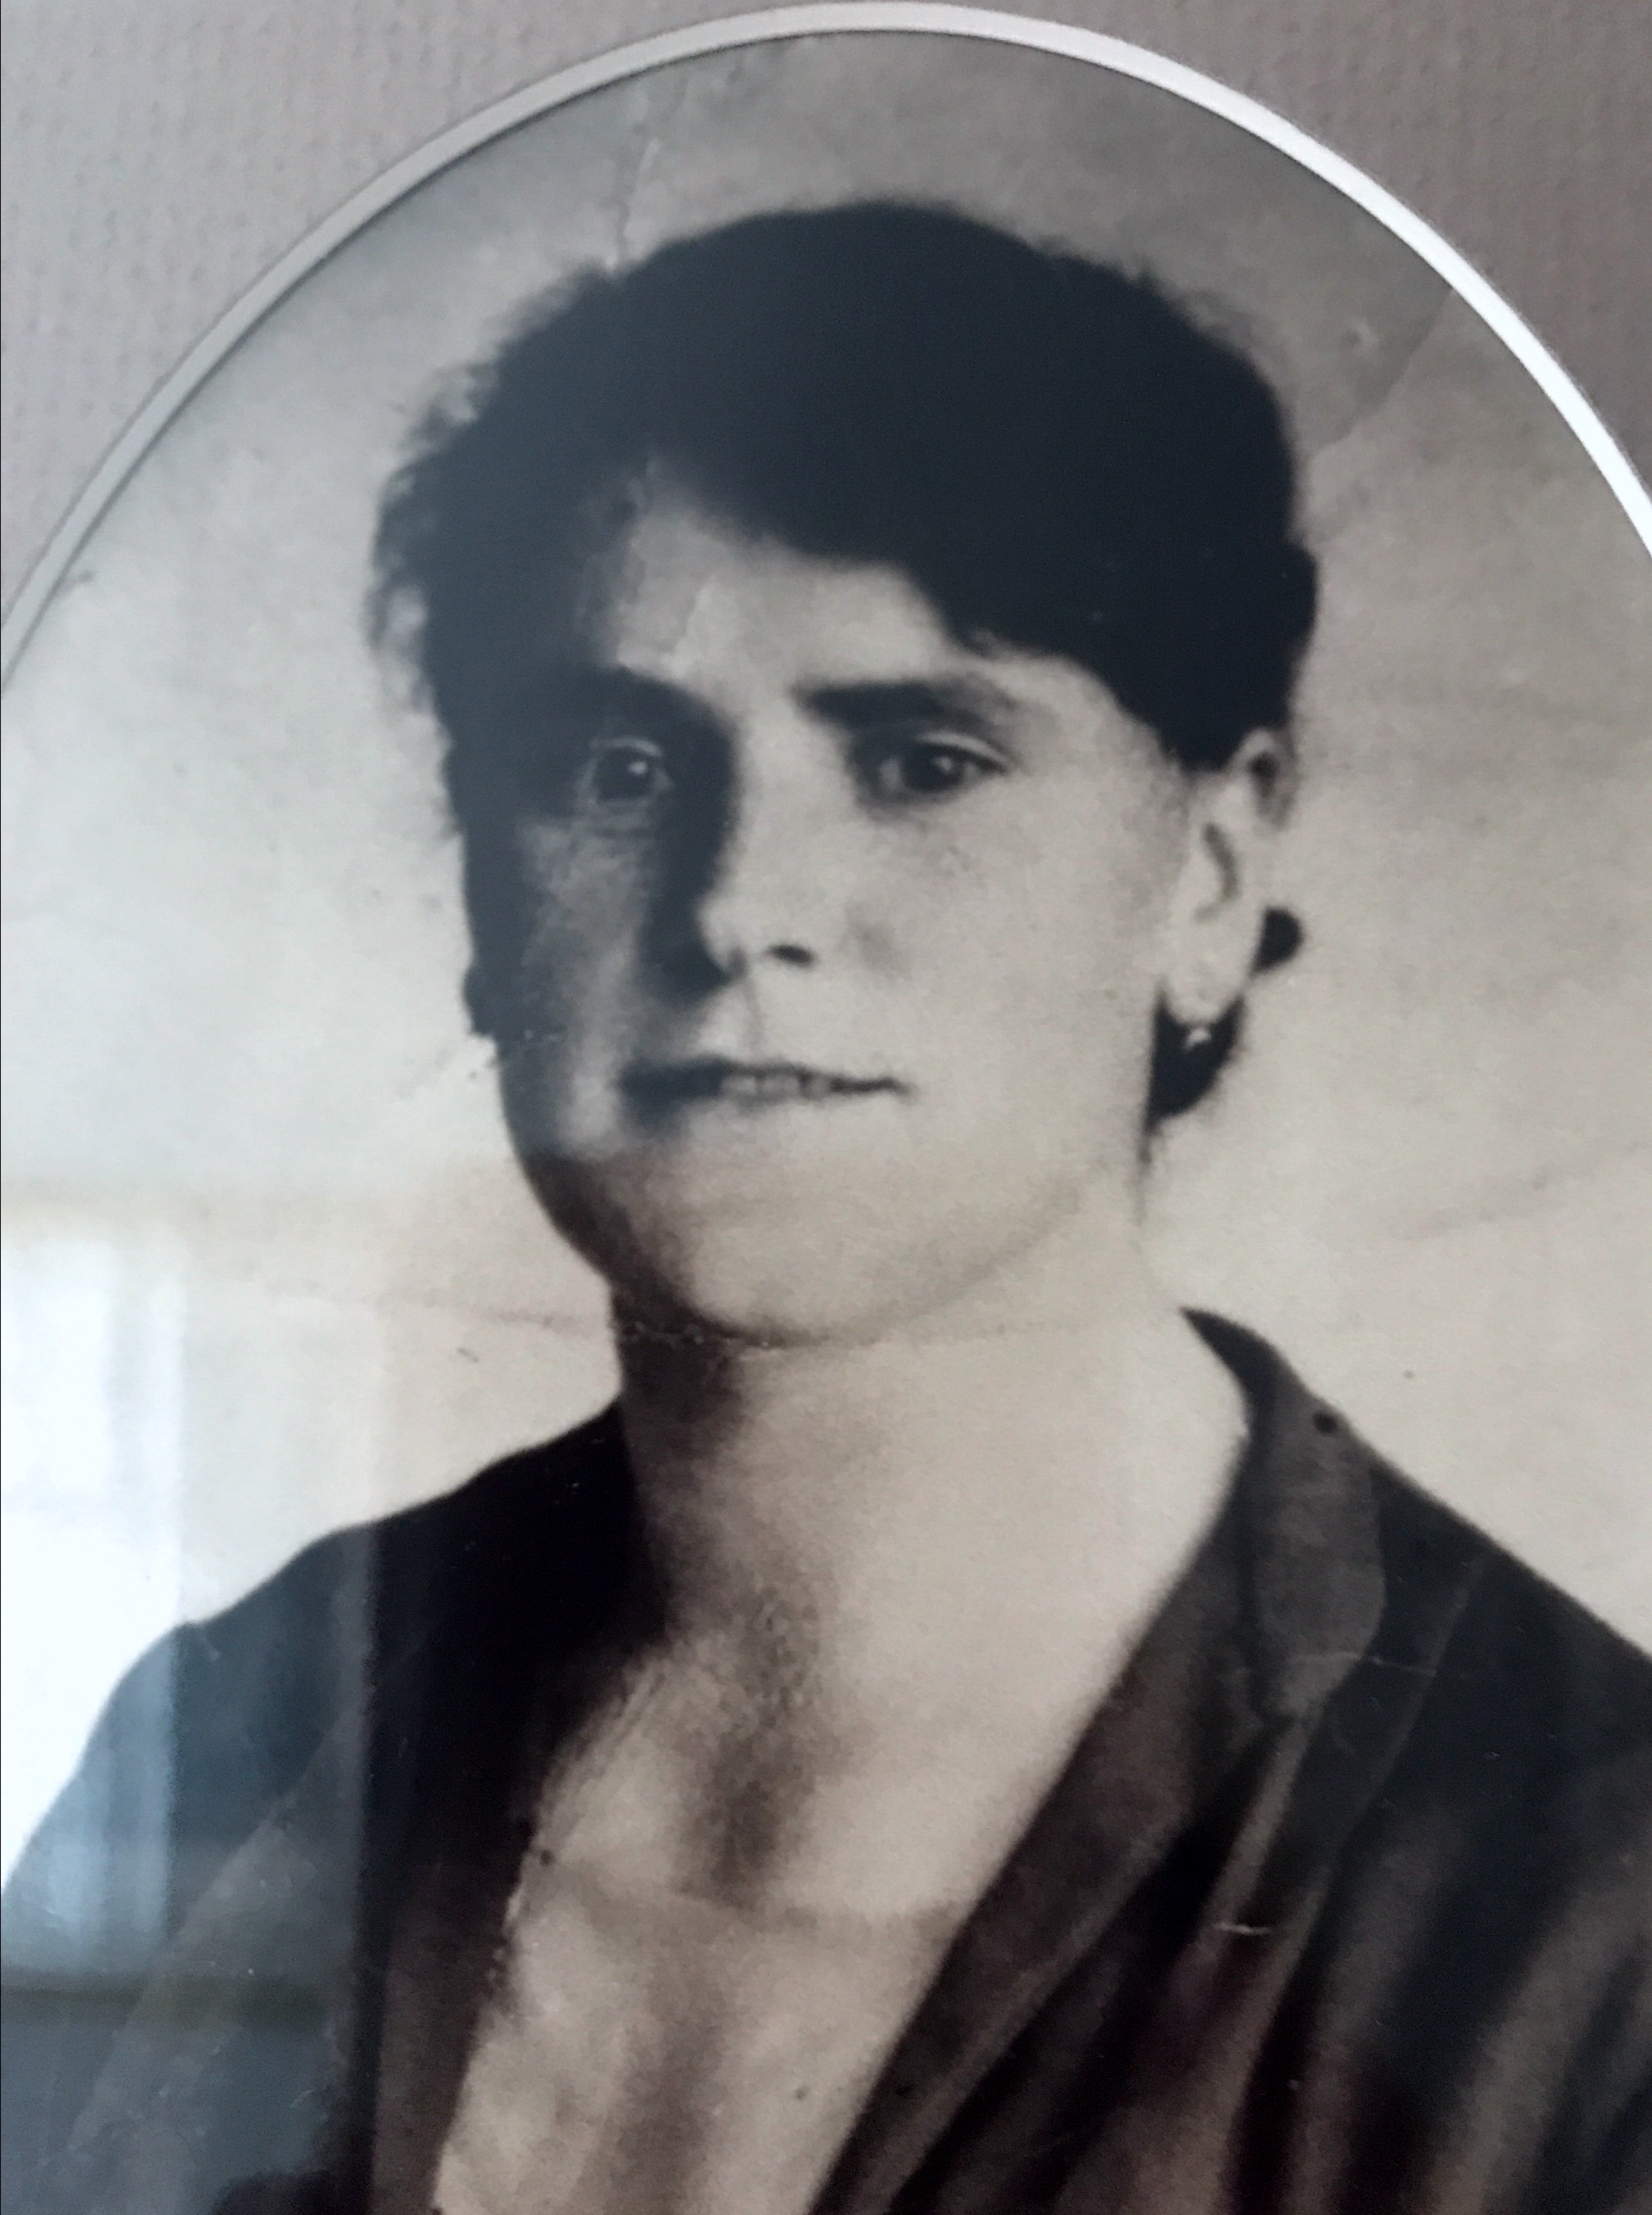 My Mom Juiana Müller-Schafroth, taken when she was single 1927 in Grän, Austria